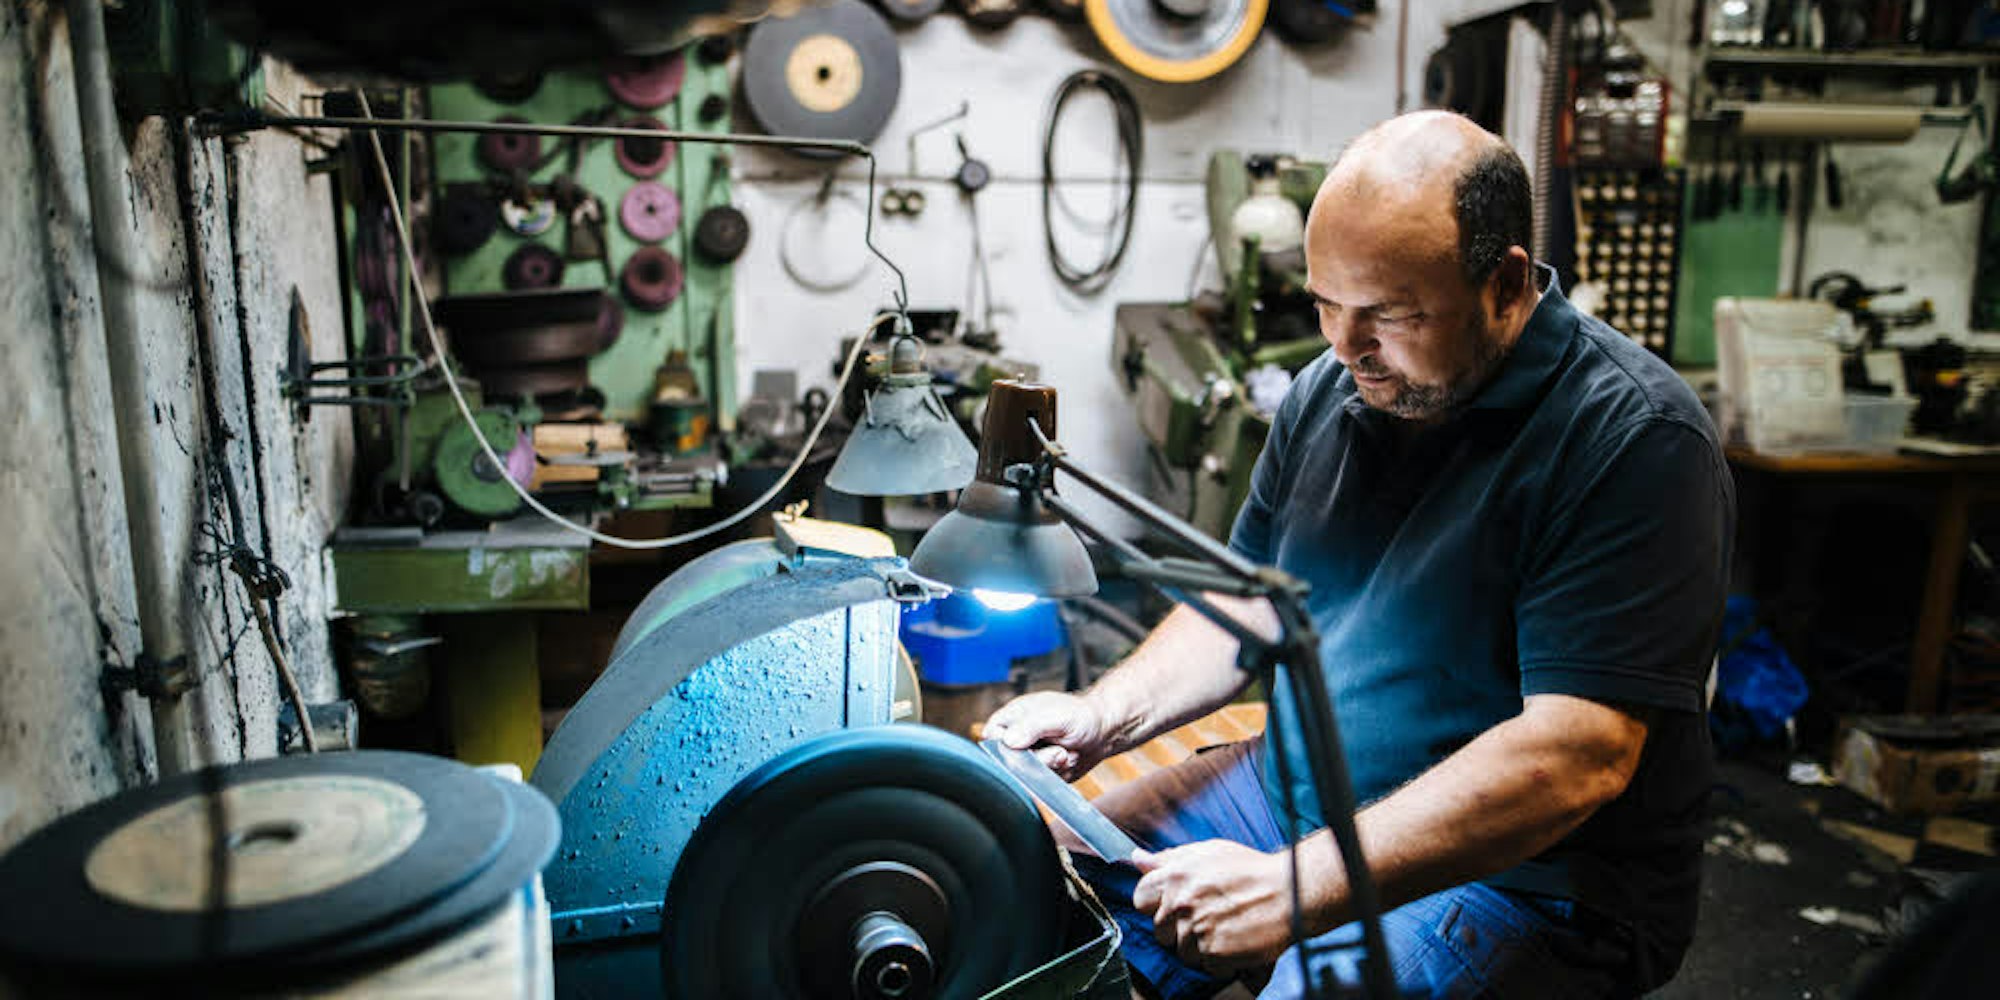 Stefan Schönfeld bringt an seinen Schleifböcken die Messer seiner Kunden wieder in Form. Sein Großvater hat schon in dieser Werkstatt gearbeitet und seit einem Jahr ist auch sein Sohn im Geschäft.